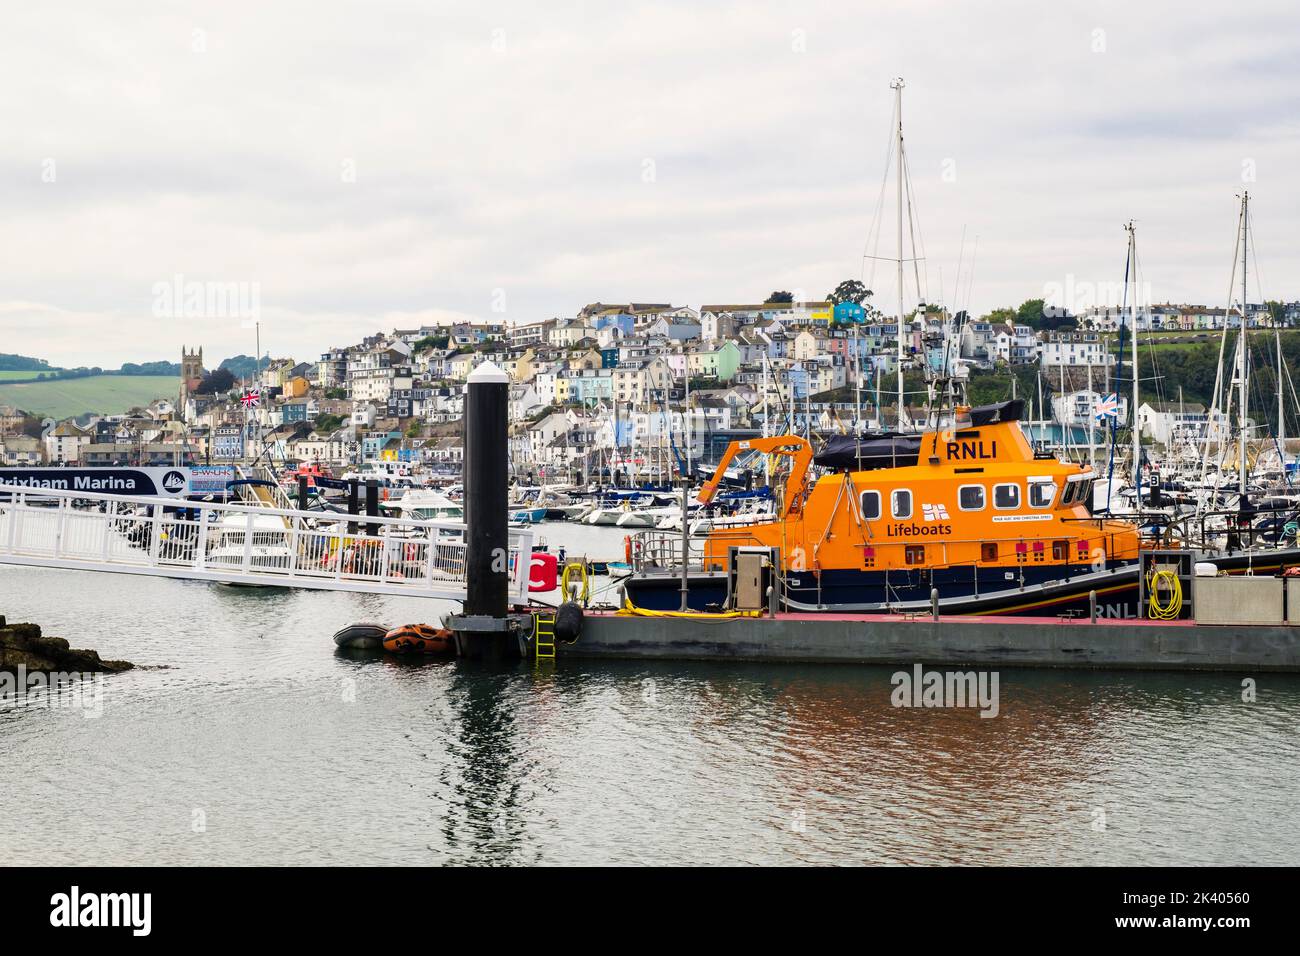 RNLI bote salvavidas en un embarcadero en el puerto con la ciudad más allá. Brixham, Devon, Inglaterra, Reino Unido, Gran Bretaña Foto de stock